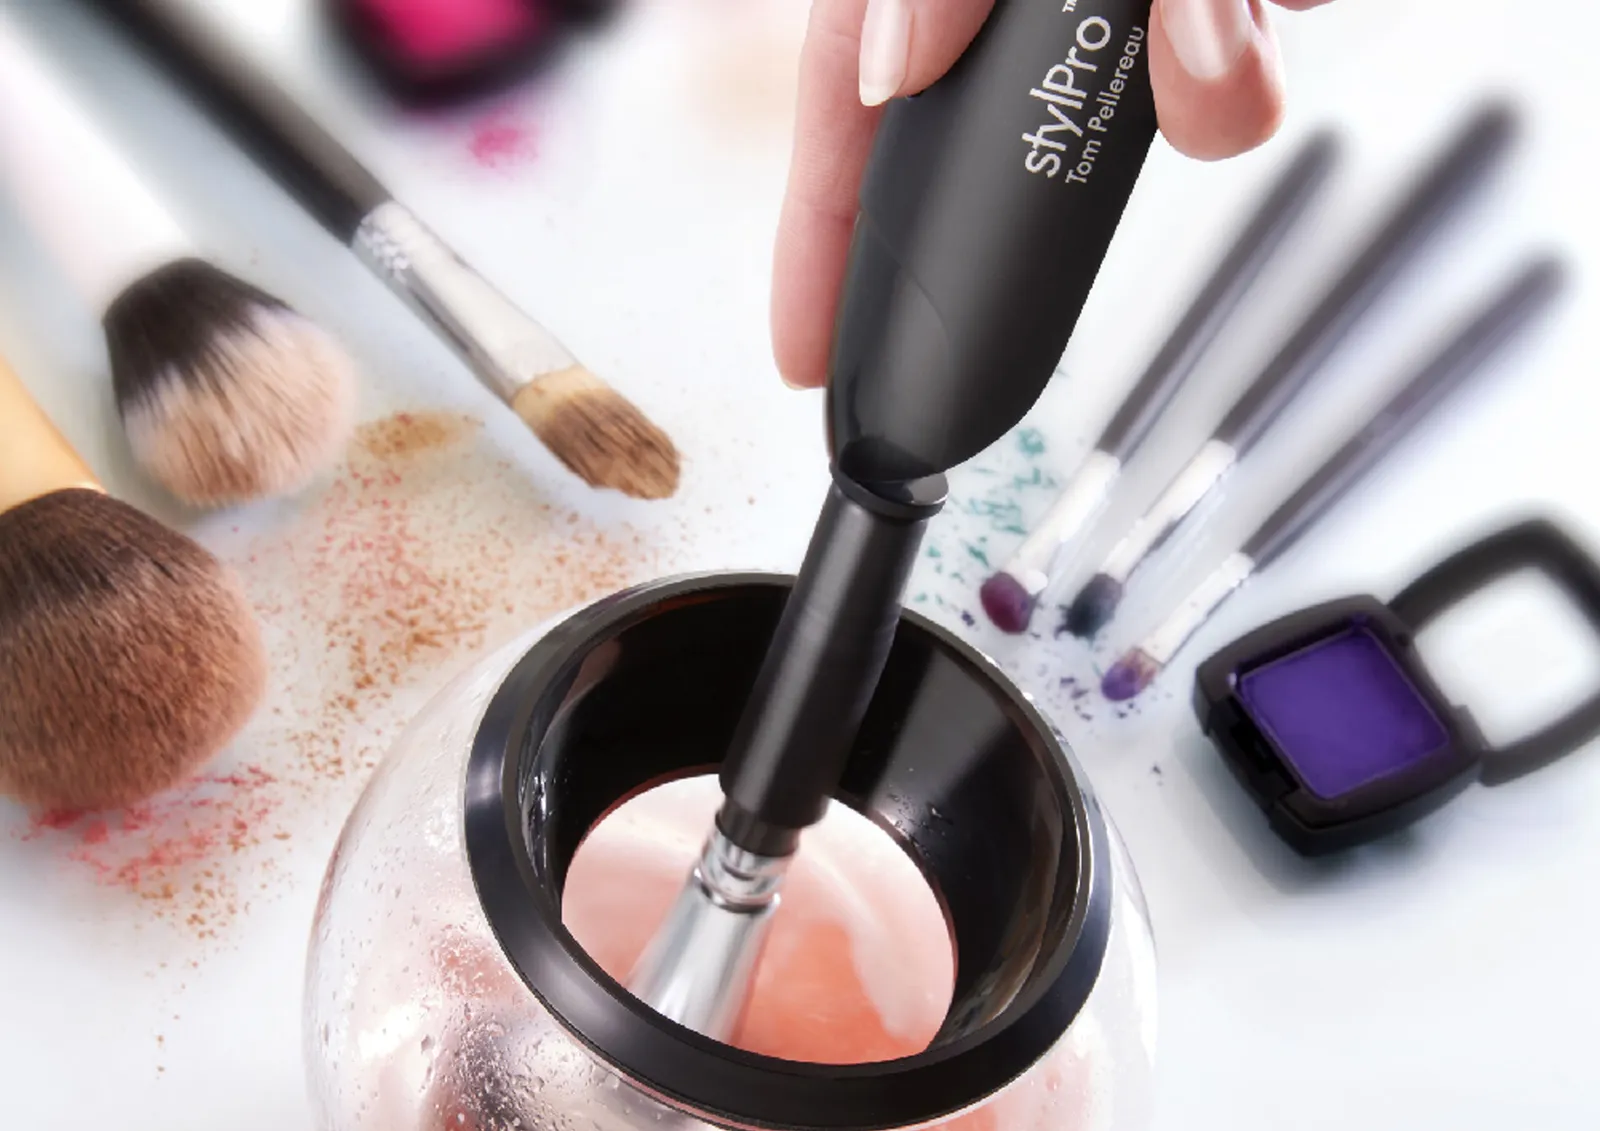 Stylpro Hadir untuk Membersihkan Makeup Brush Secepat Kilat!